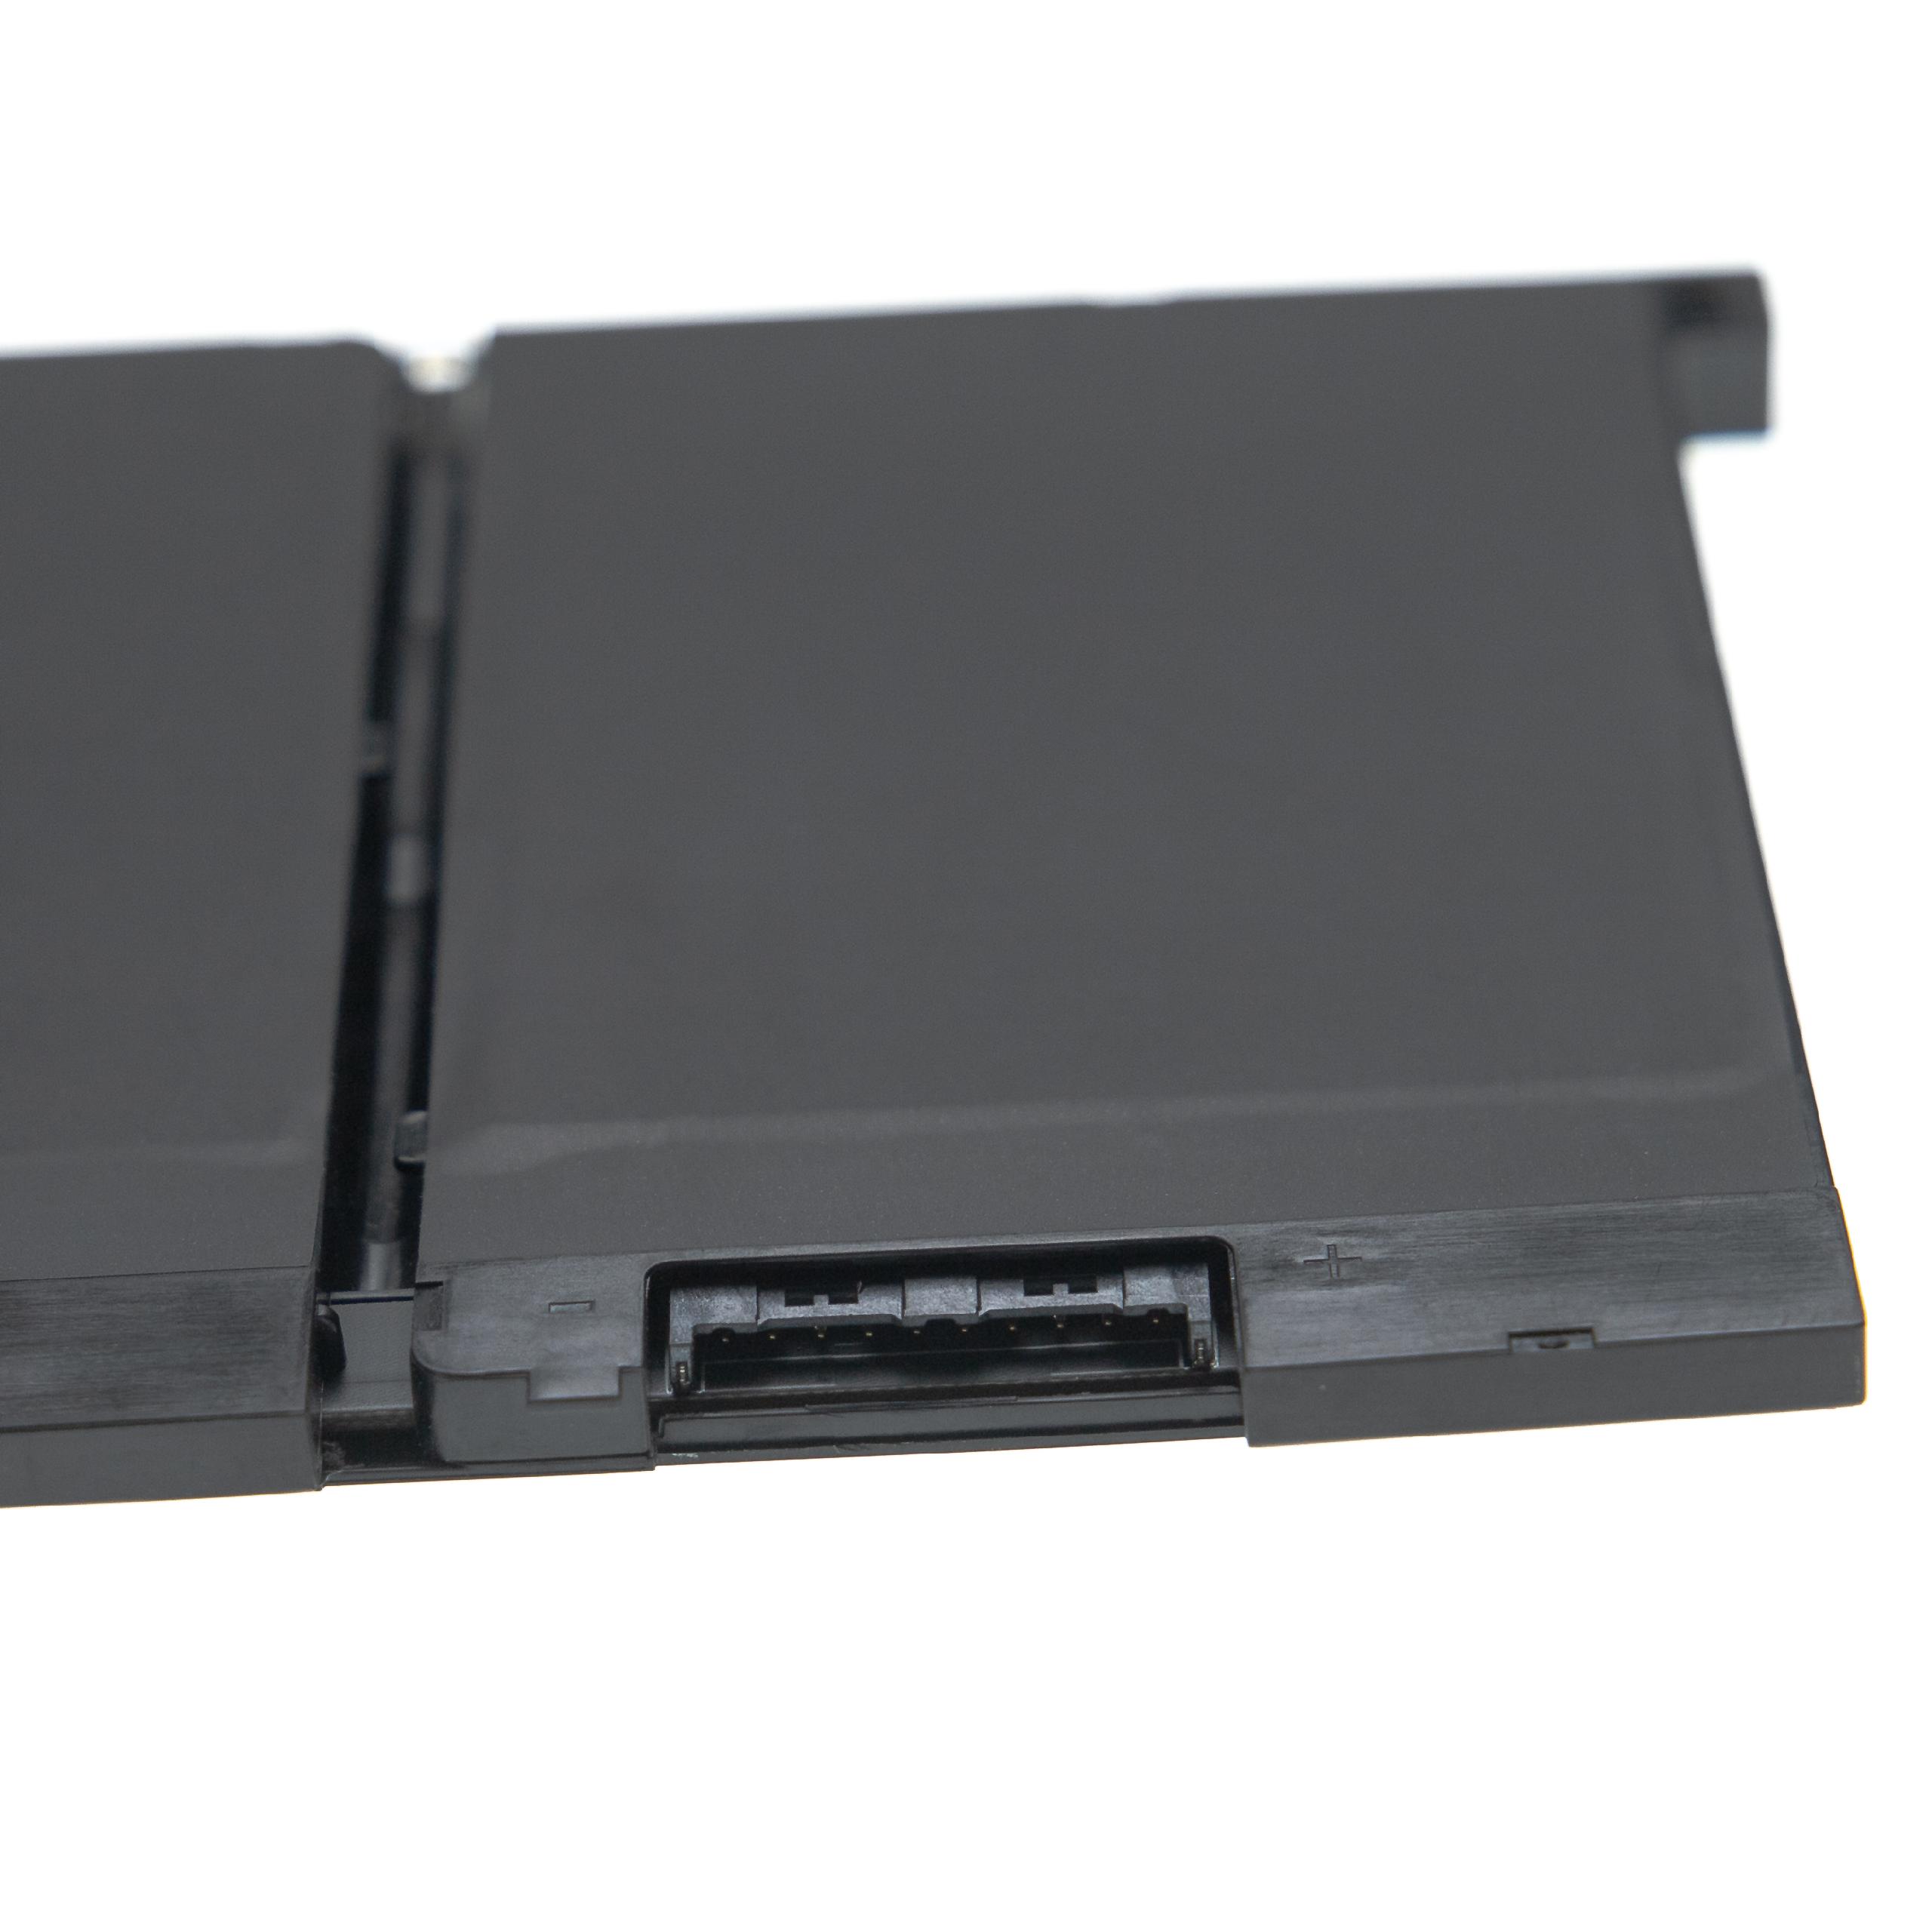 Batterie remplace Dell 83XPC, 0DJWGP, 3DDDG, 00JWGP, 4yfvg pour ordinateur portable - 4200mAh 11,4V Li-ion